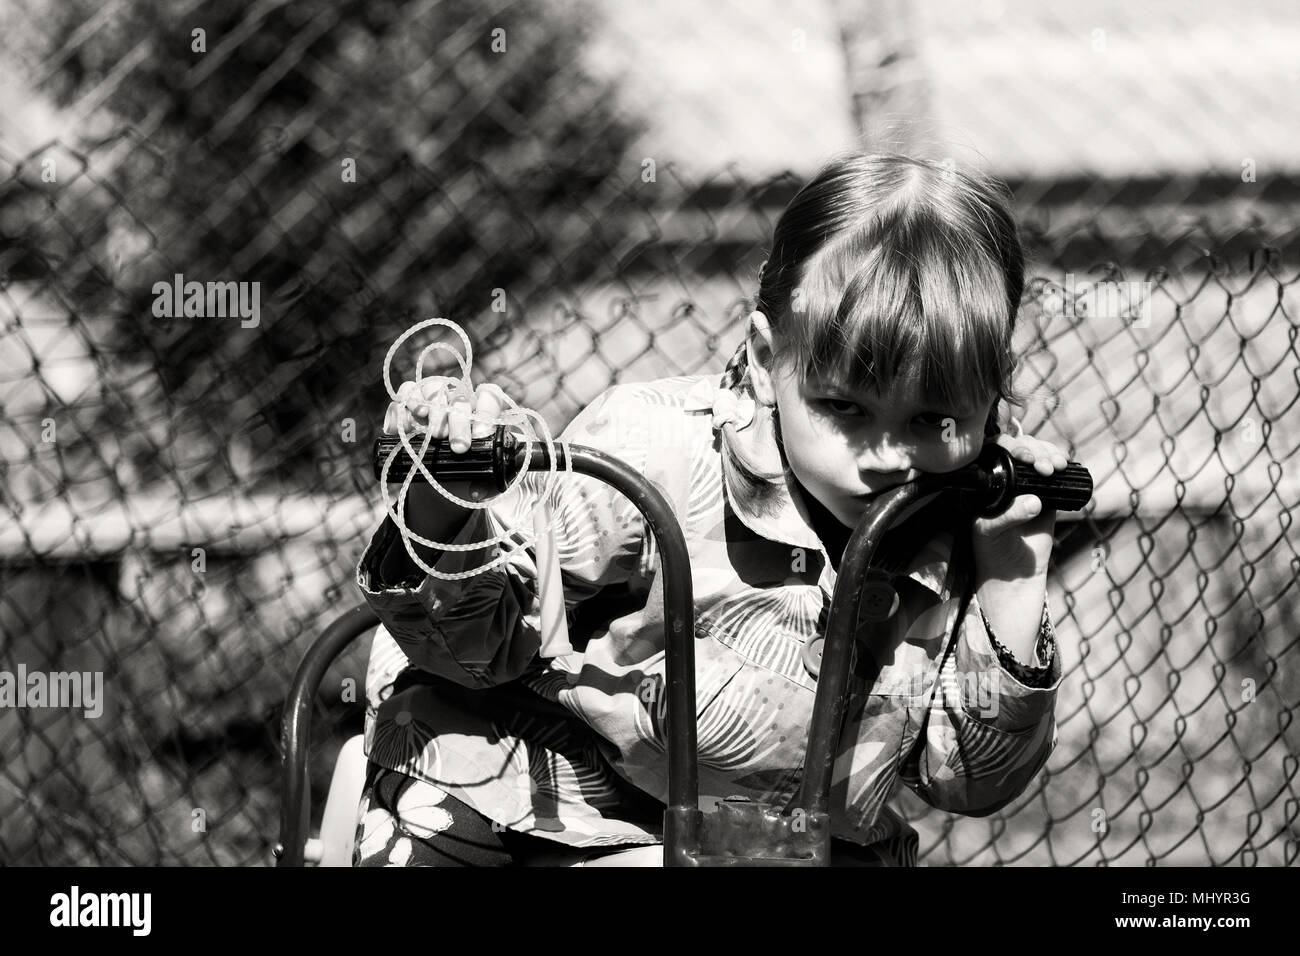 Bambina Su Un Bambini Chopper Bambina Su Una Bici Foto In Bianco E Nero In Stile Retro Foto Stock Alamy